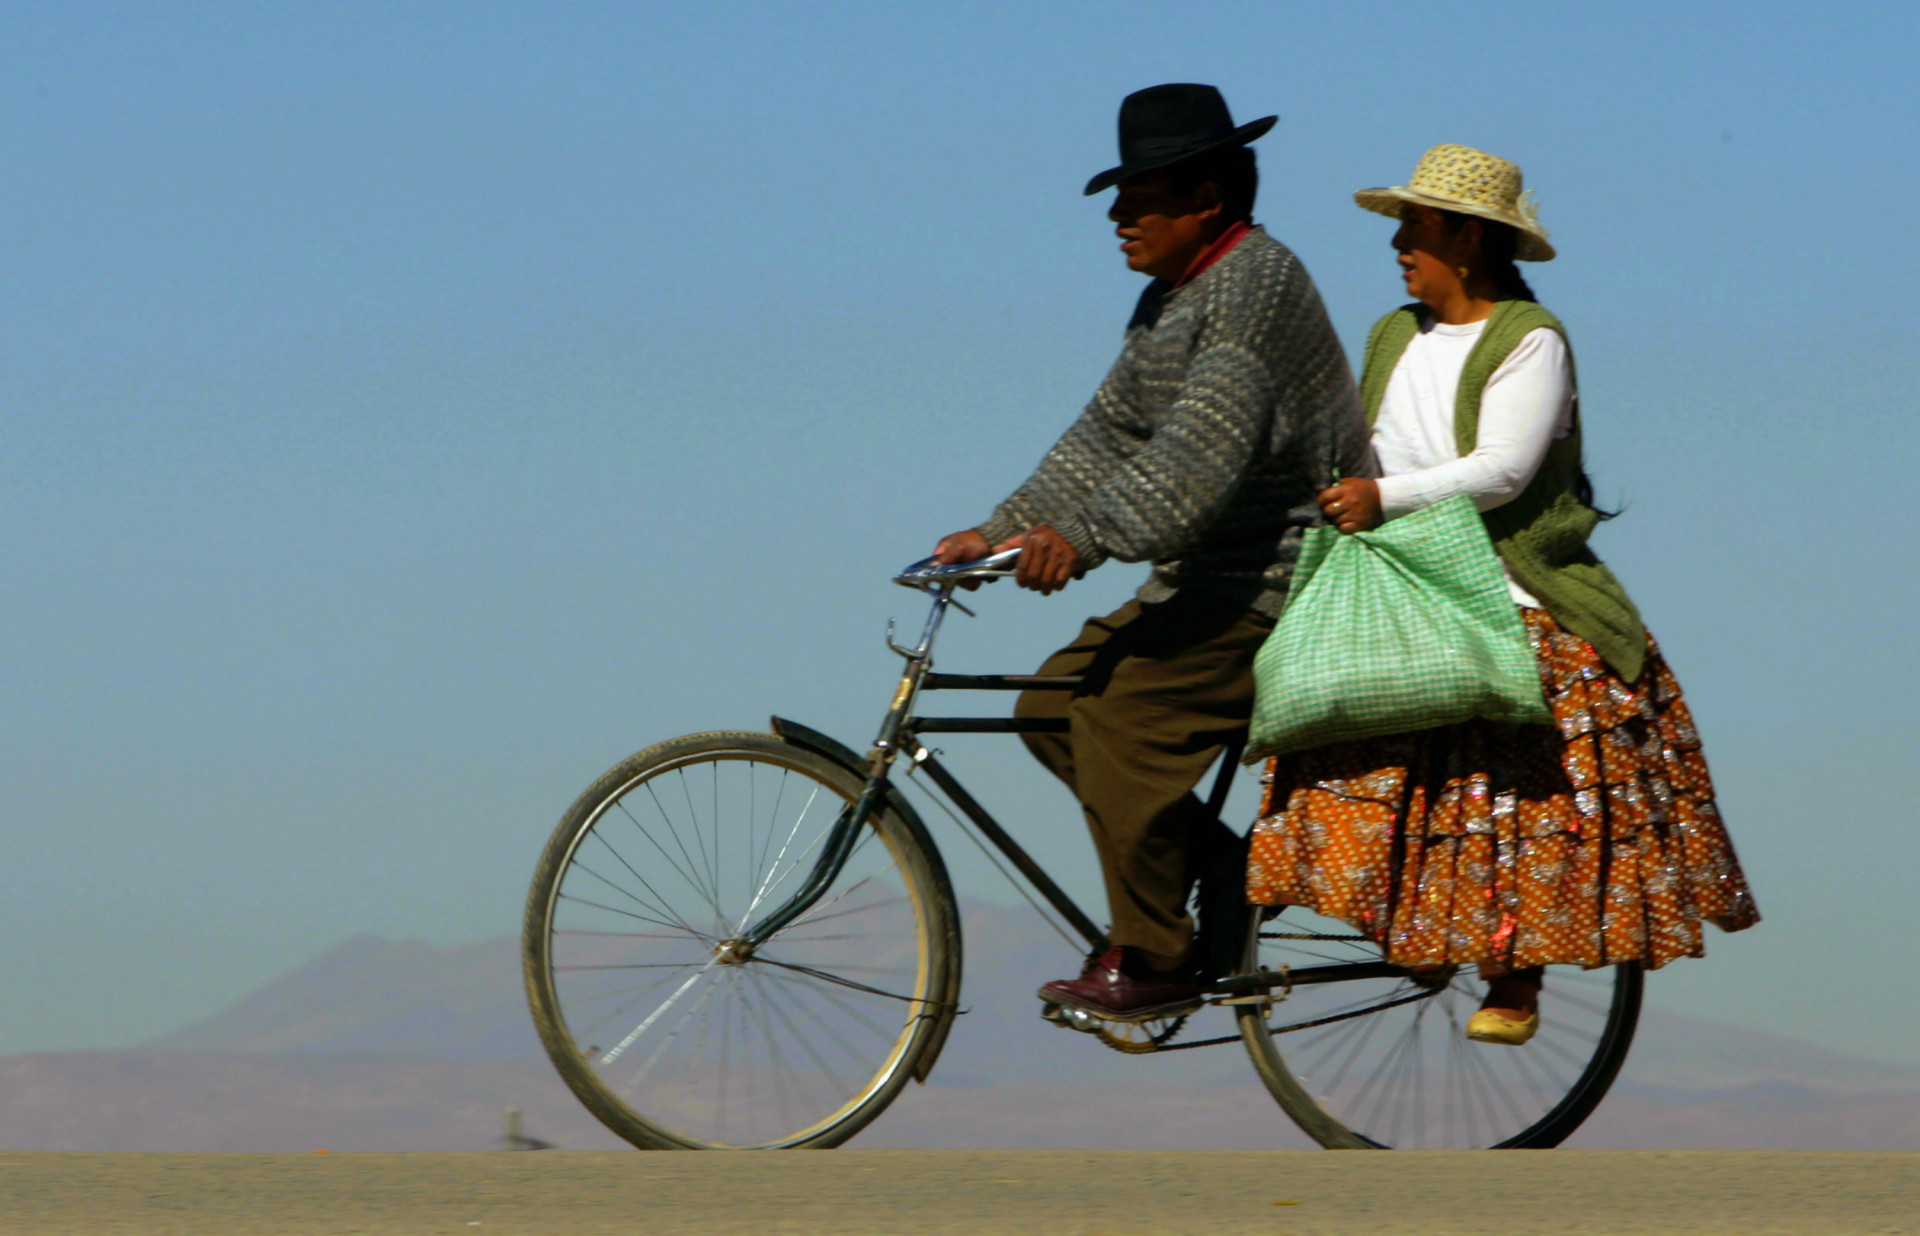 <p>C'est au XIXe siècle que la bicyclette fut inventée sur le continent européen. De nos jours, plus d'un milliard de vélos sont utilisés de par le monde, au travail, dans le sport, comme loisir ou mode de transport.</p><p>Faites le tour de nos images pour découvrir l'usage de la <a href="https://www.starsinsider.com/fr/lifestyle/539563/et-si-le-velo-boulot-dodo-remplacait-le-metro-boulot-dodo" rel="noopener">bicyclette</a> selon les pays et les coutumes.</p><p>Tu pourrais aussi aimer:<a href="https://www.starsinsider.com/n/237882?utm_source=msn.com&utm_medium=display&utm_campaign=referral_description&utm_content=311388v1"> Banksy: tour du monde de ses plus beaux graffitis</a></p>